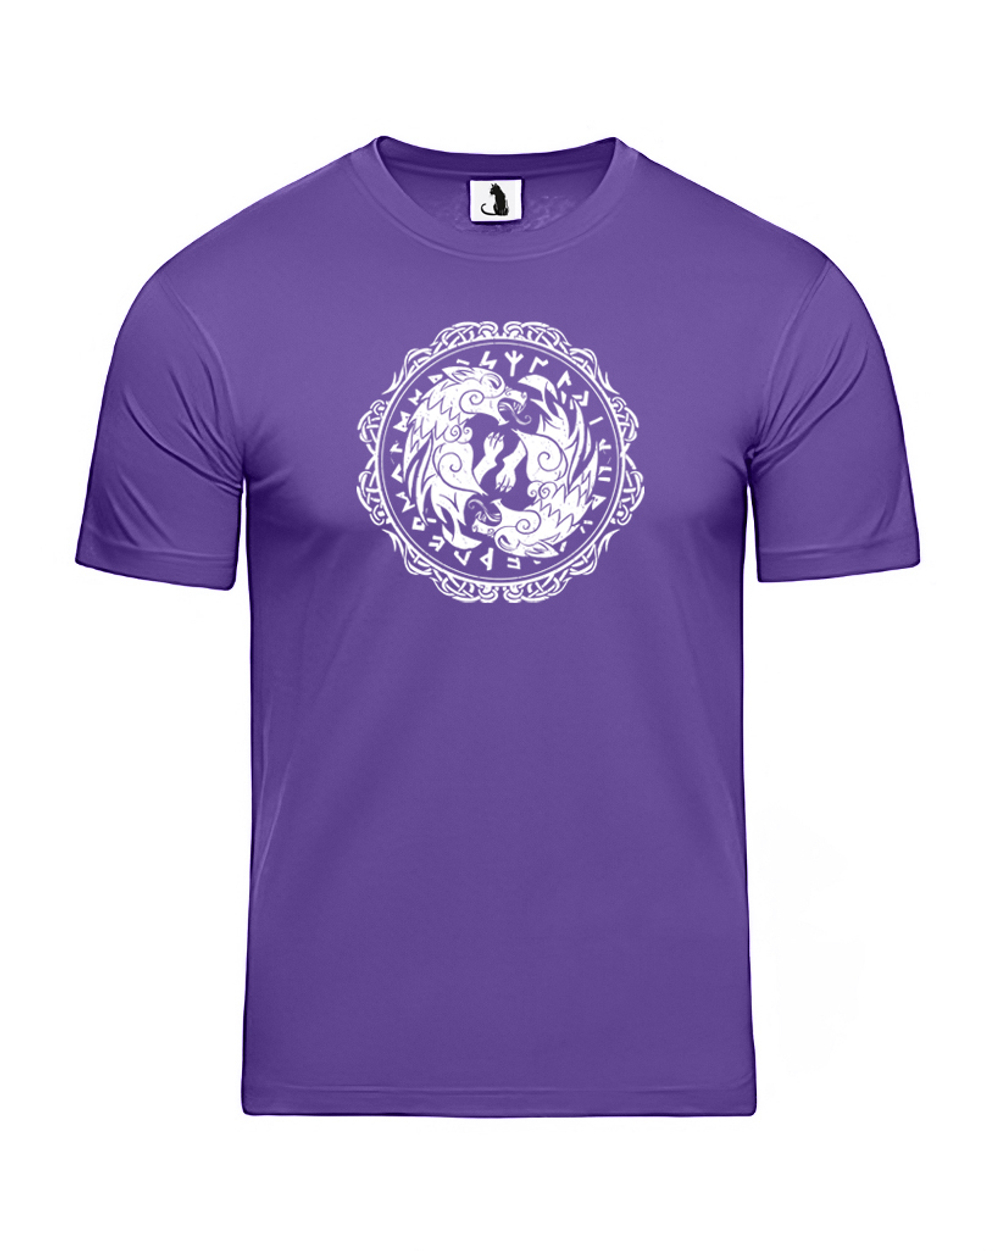 Скандинавская футболка с волком и рунами unisex фиолетовая с белым рисунком